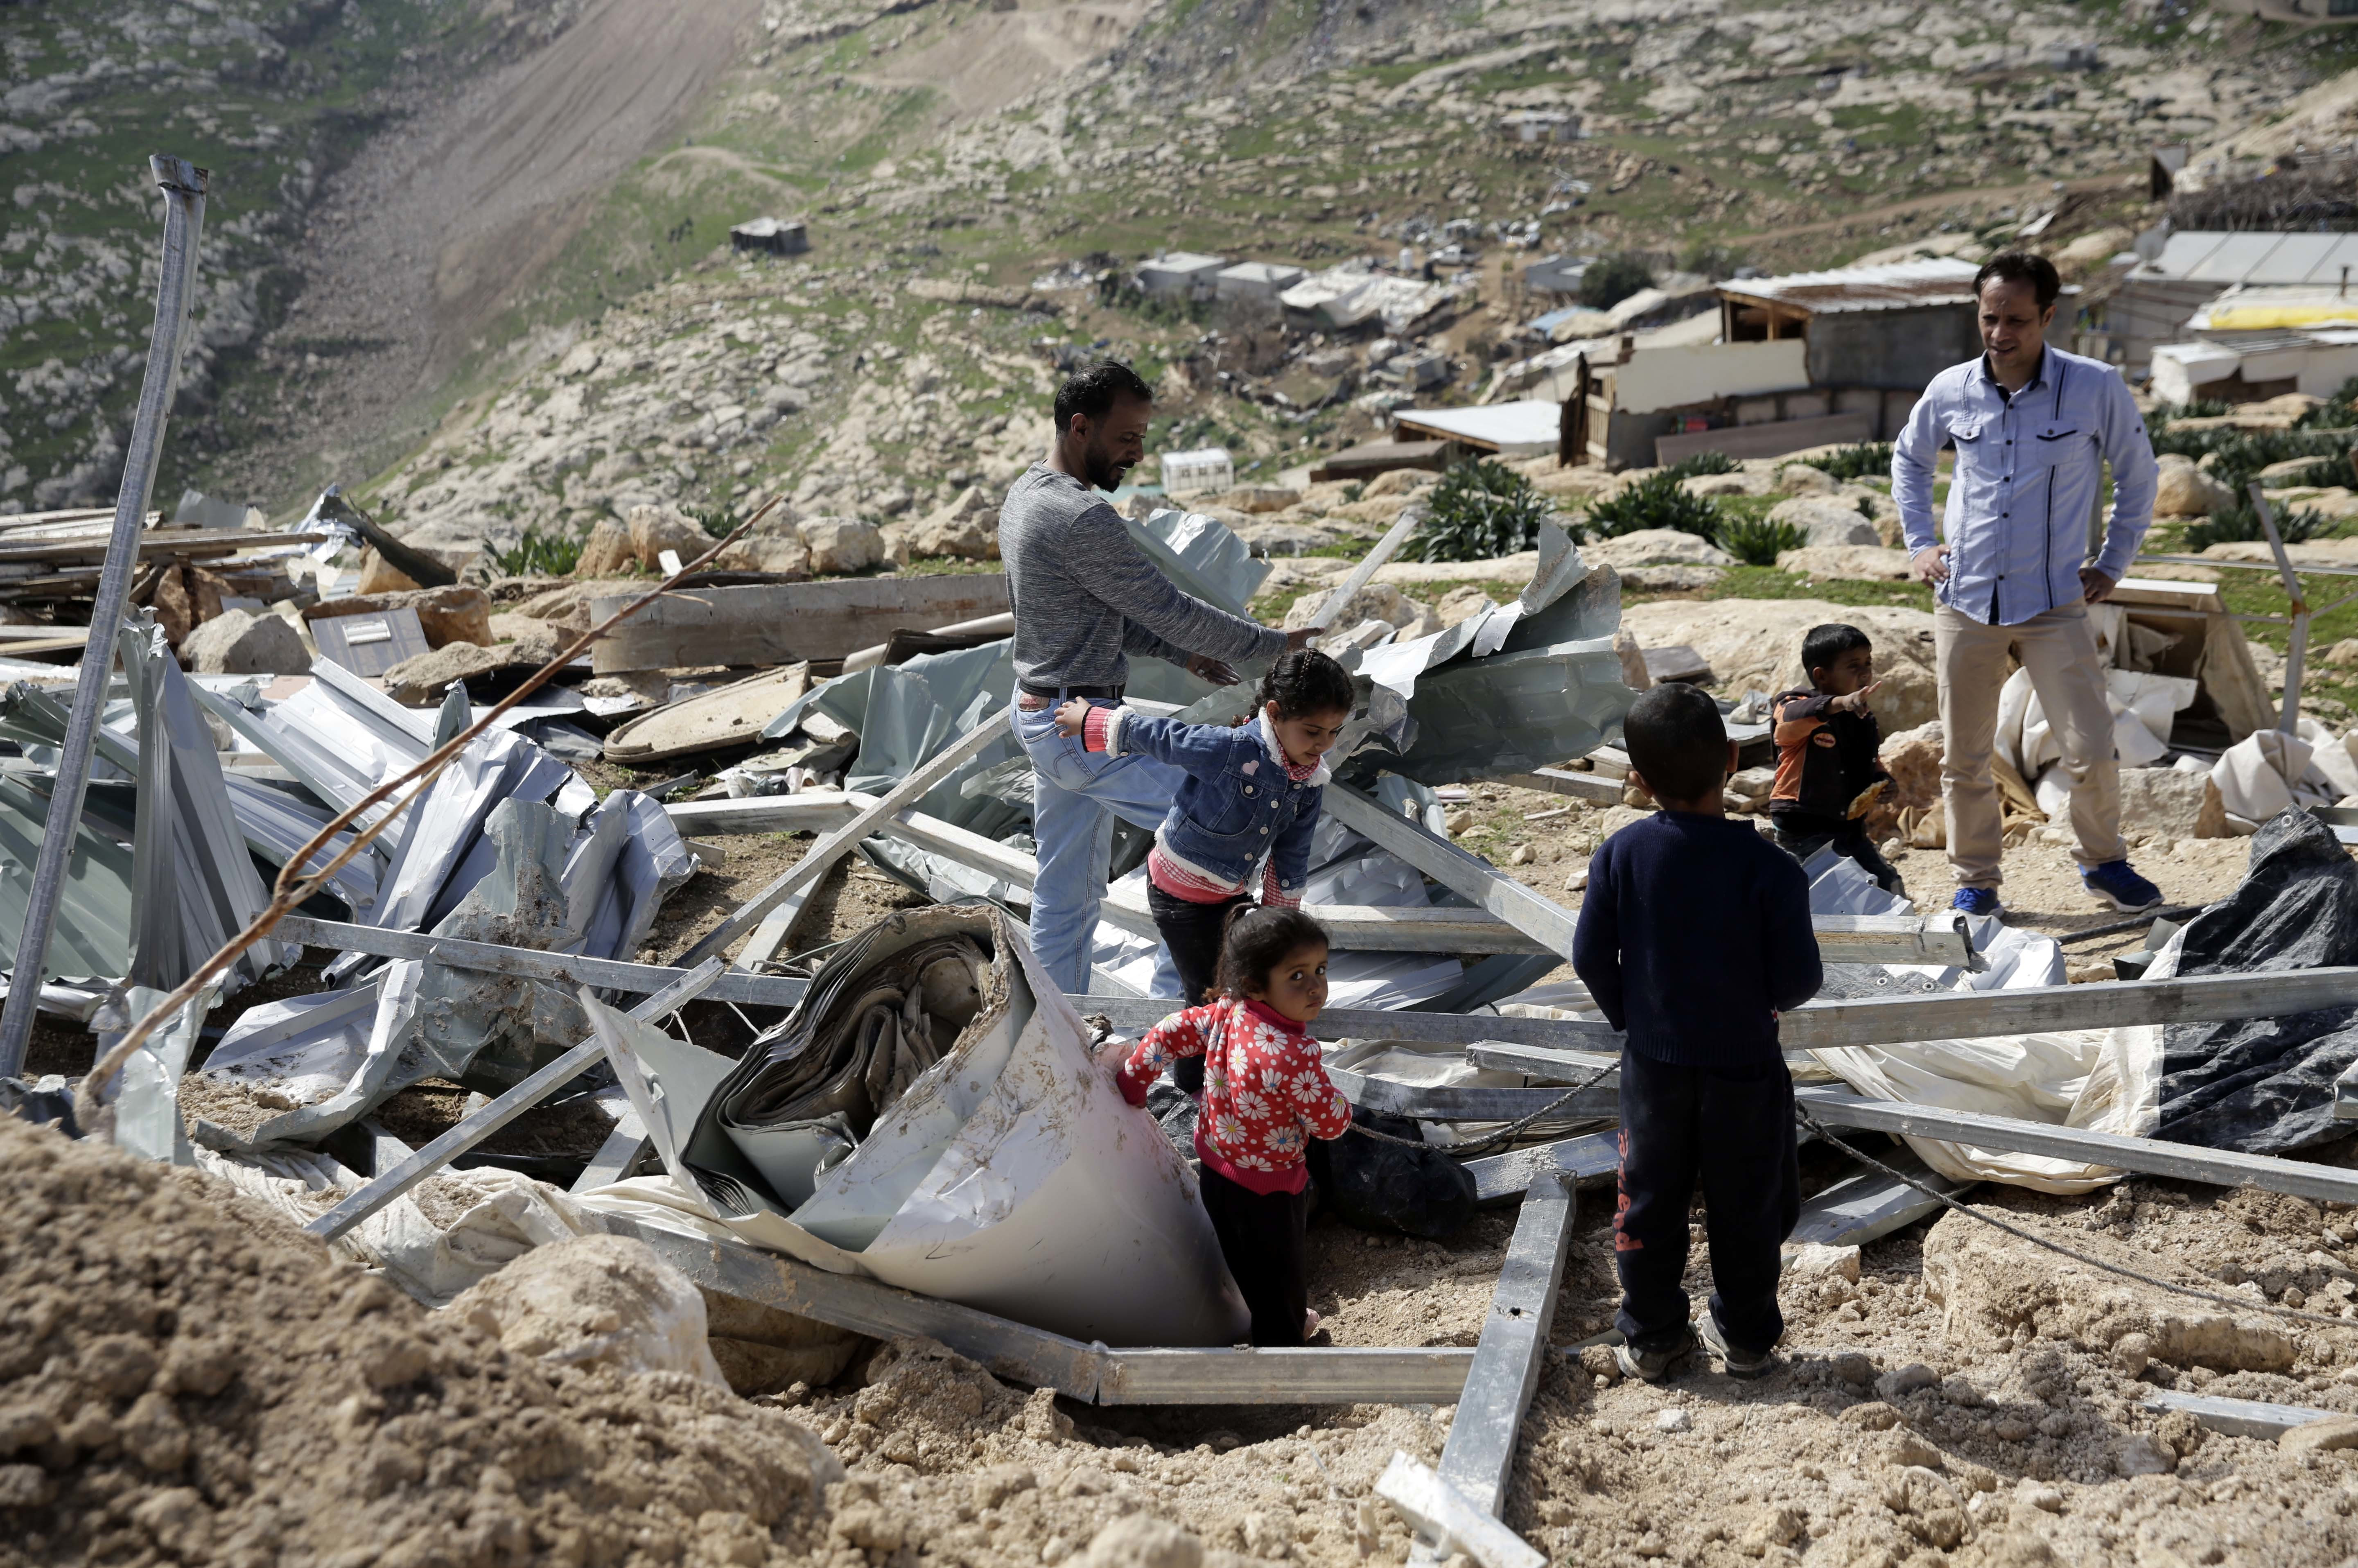 İsrail'in çıkardığı yıkım faturasını ödeyemeyen Filistinliler evlerini kendileri yıkmak zorunda kalıyor.